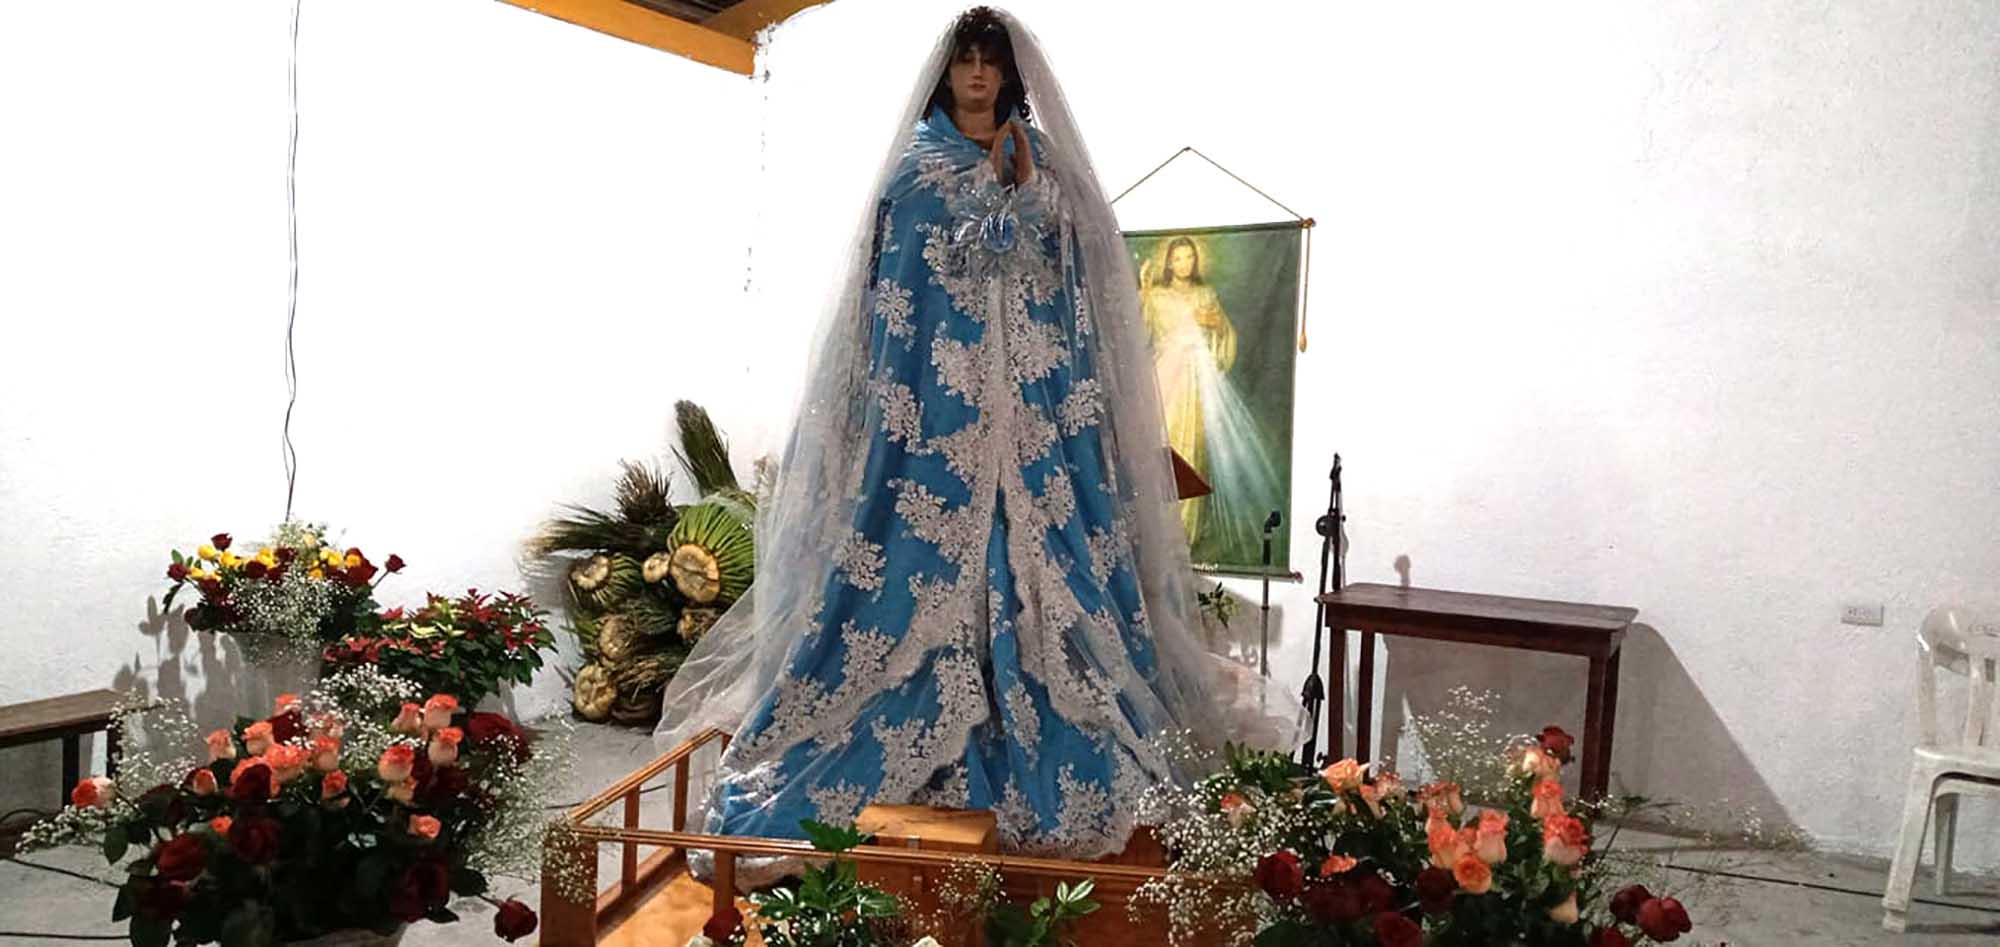 Foto de la Virgen de la Inmaculada Concepción. foto del muro de facebok de la página Tortuga1